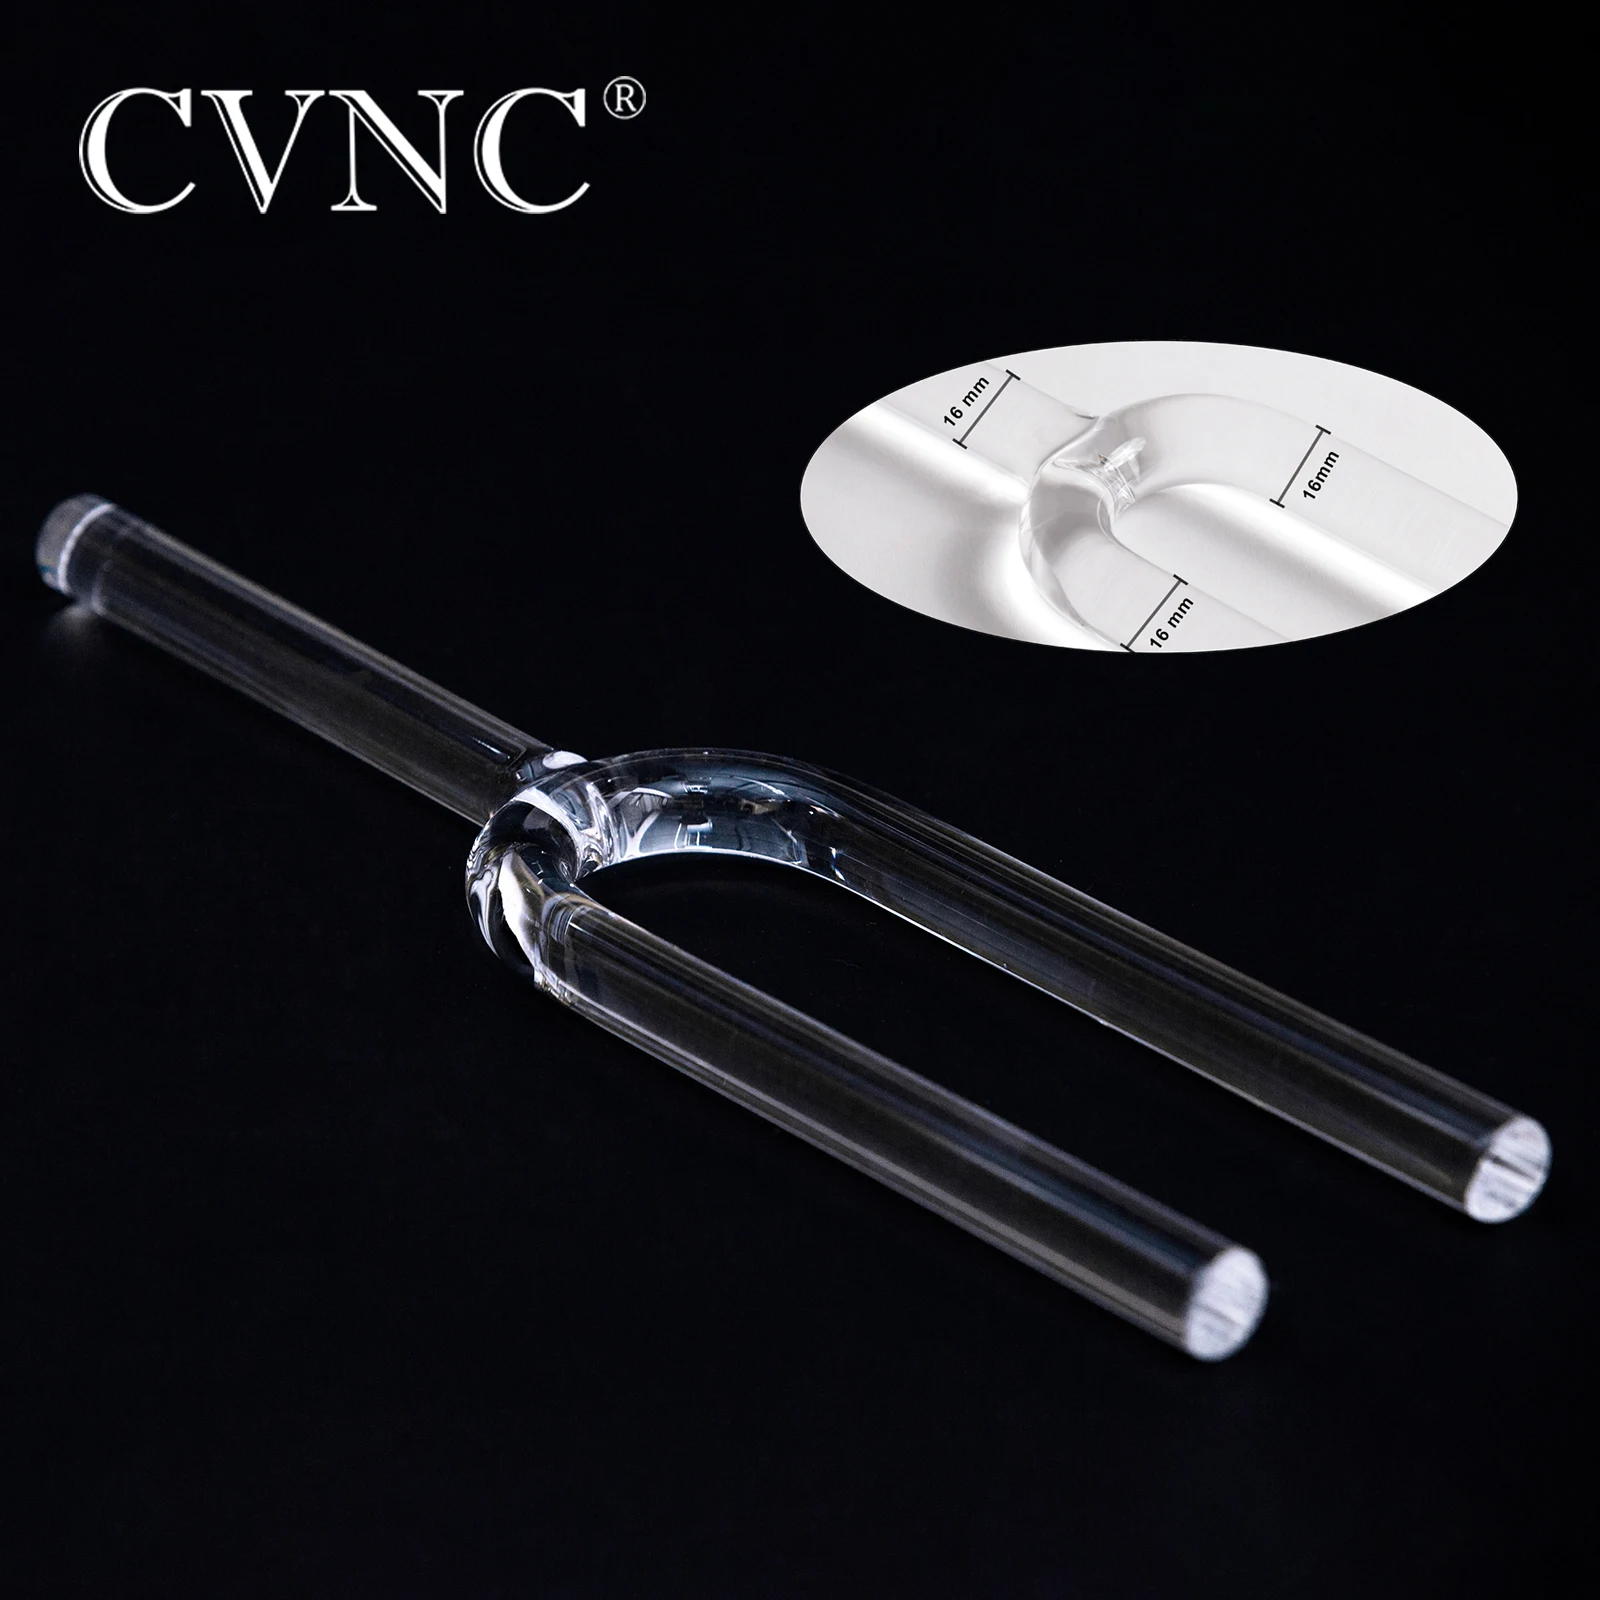 Вилка-cvnc-440-Гц-или-432-Гц-16-мм-с-прозрачным-кварцевым-кристаллом-для-пения-и-лечения-звука-и-медитации